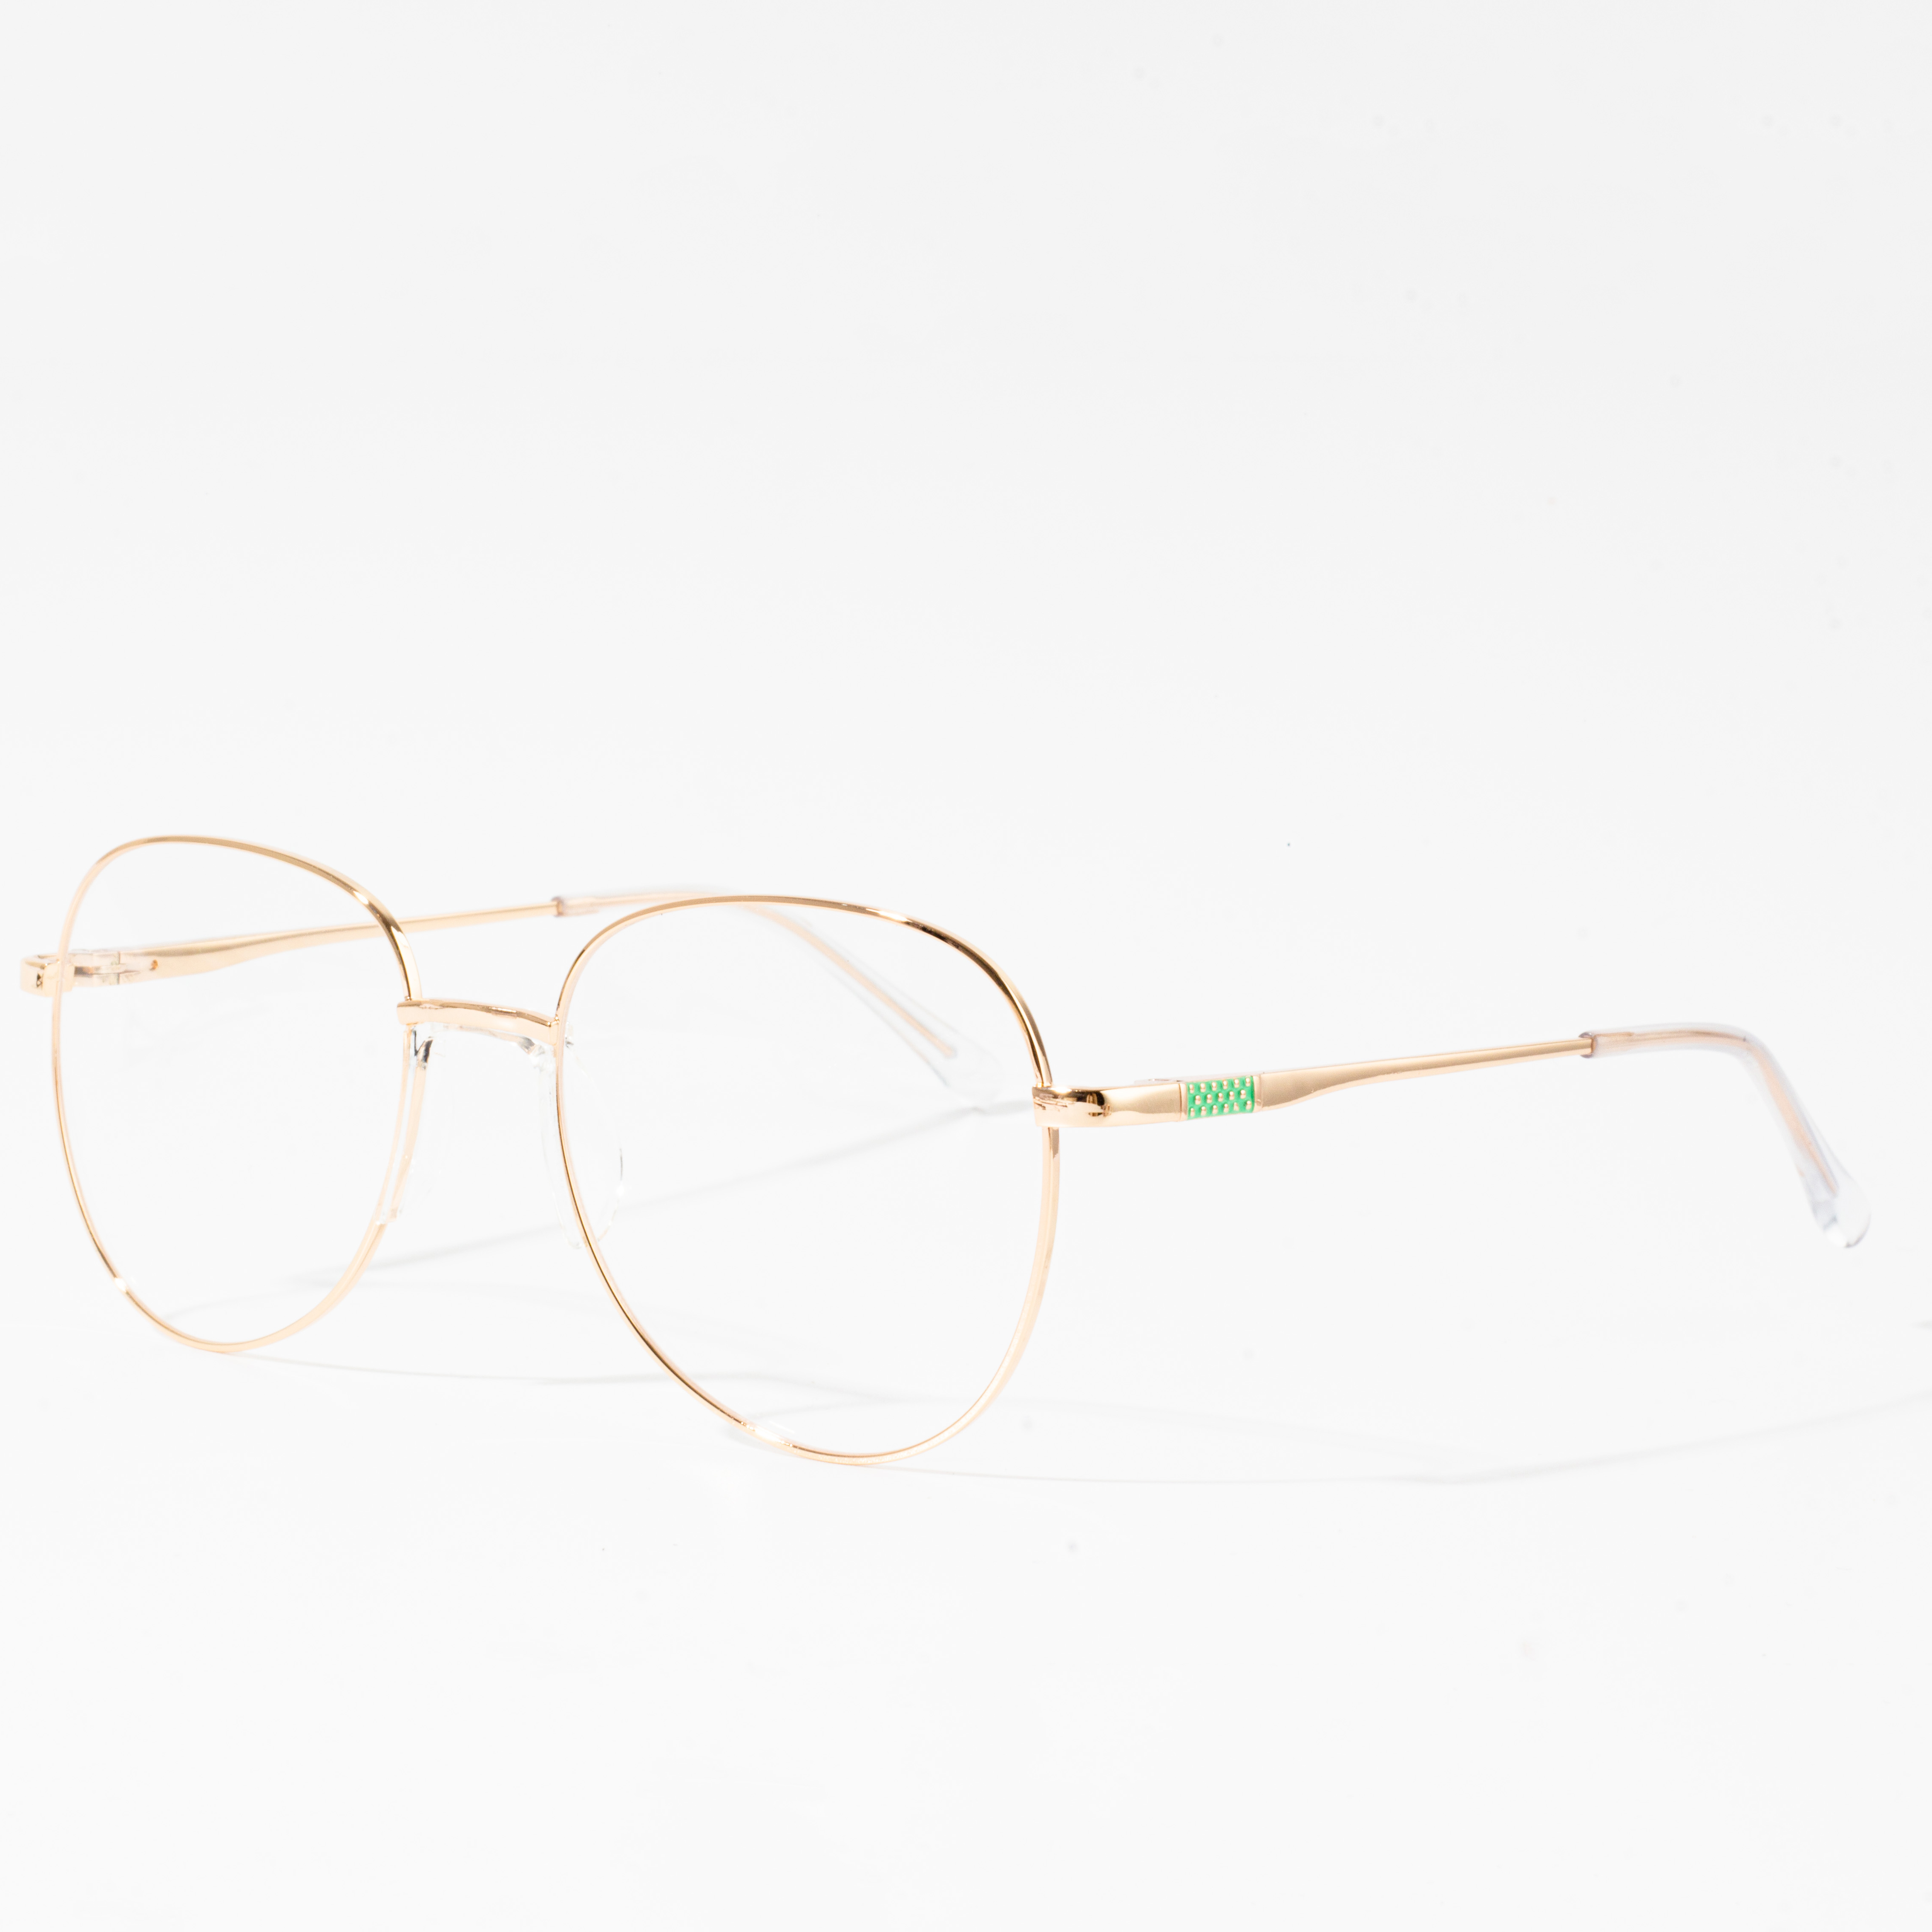 eyeglasses frames for women